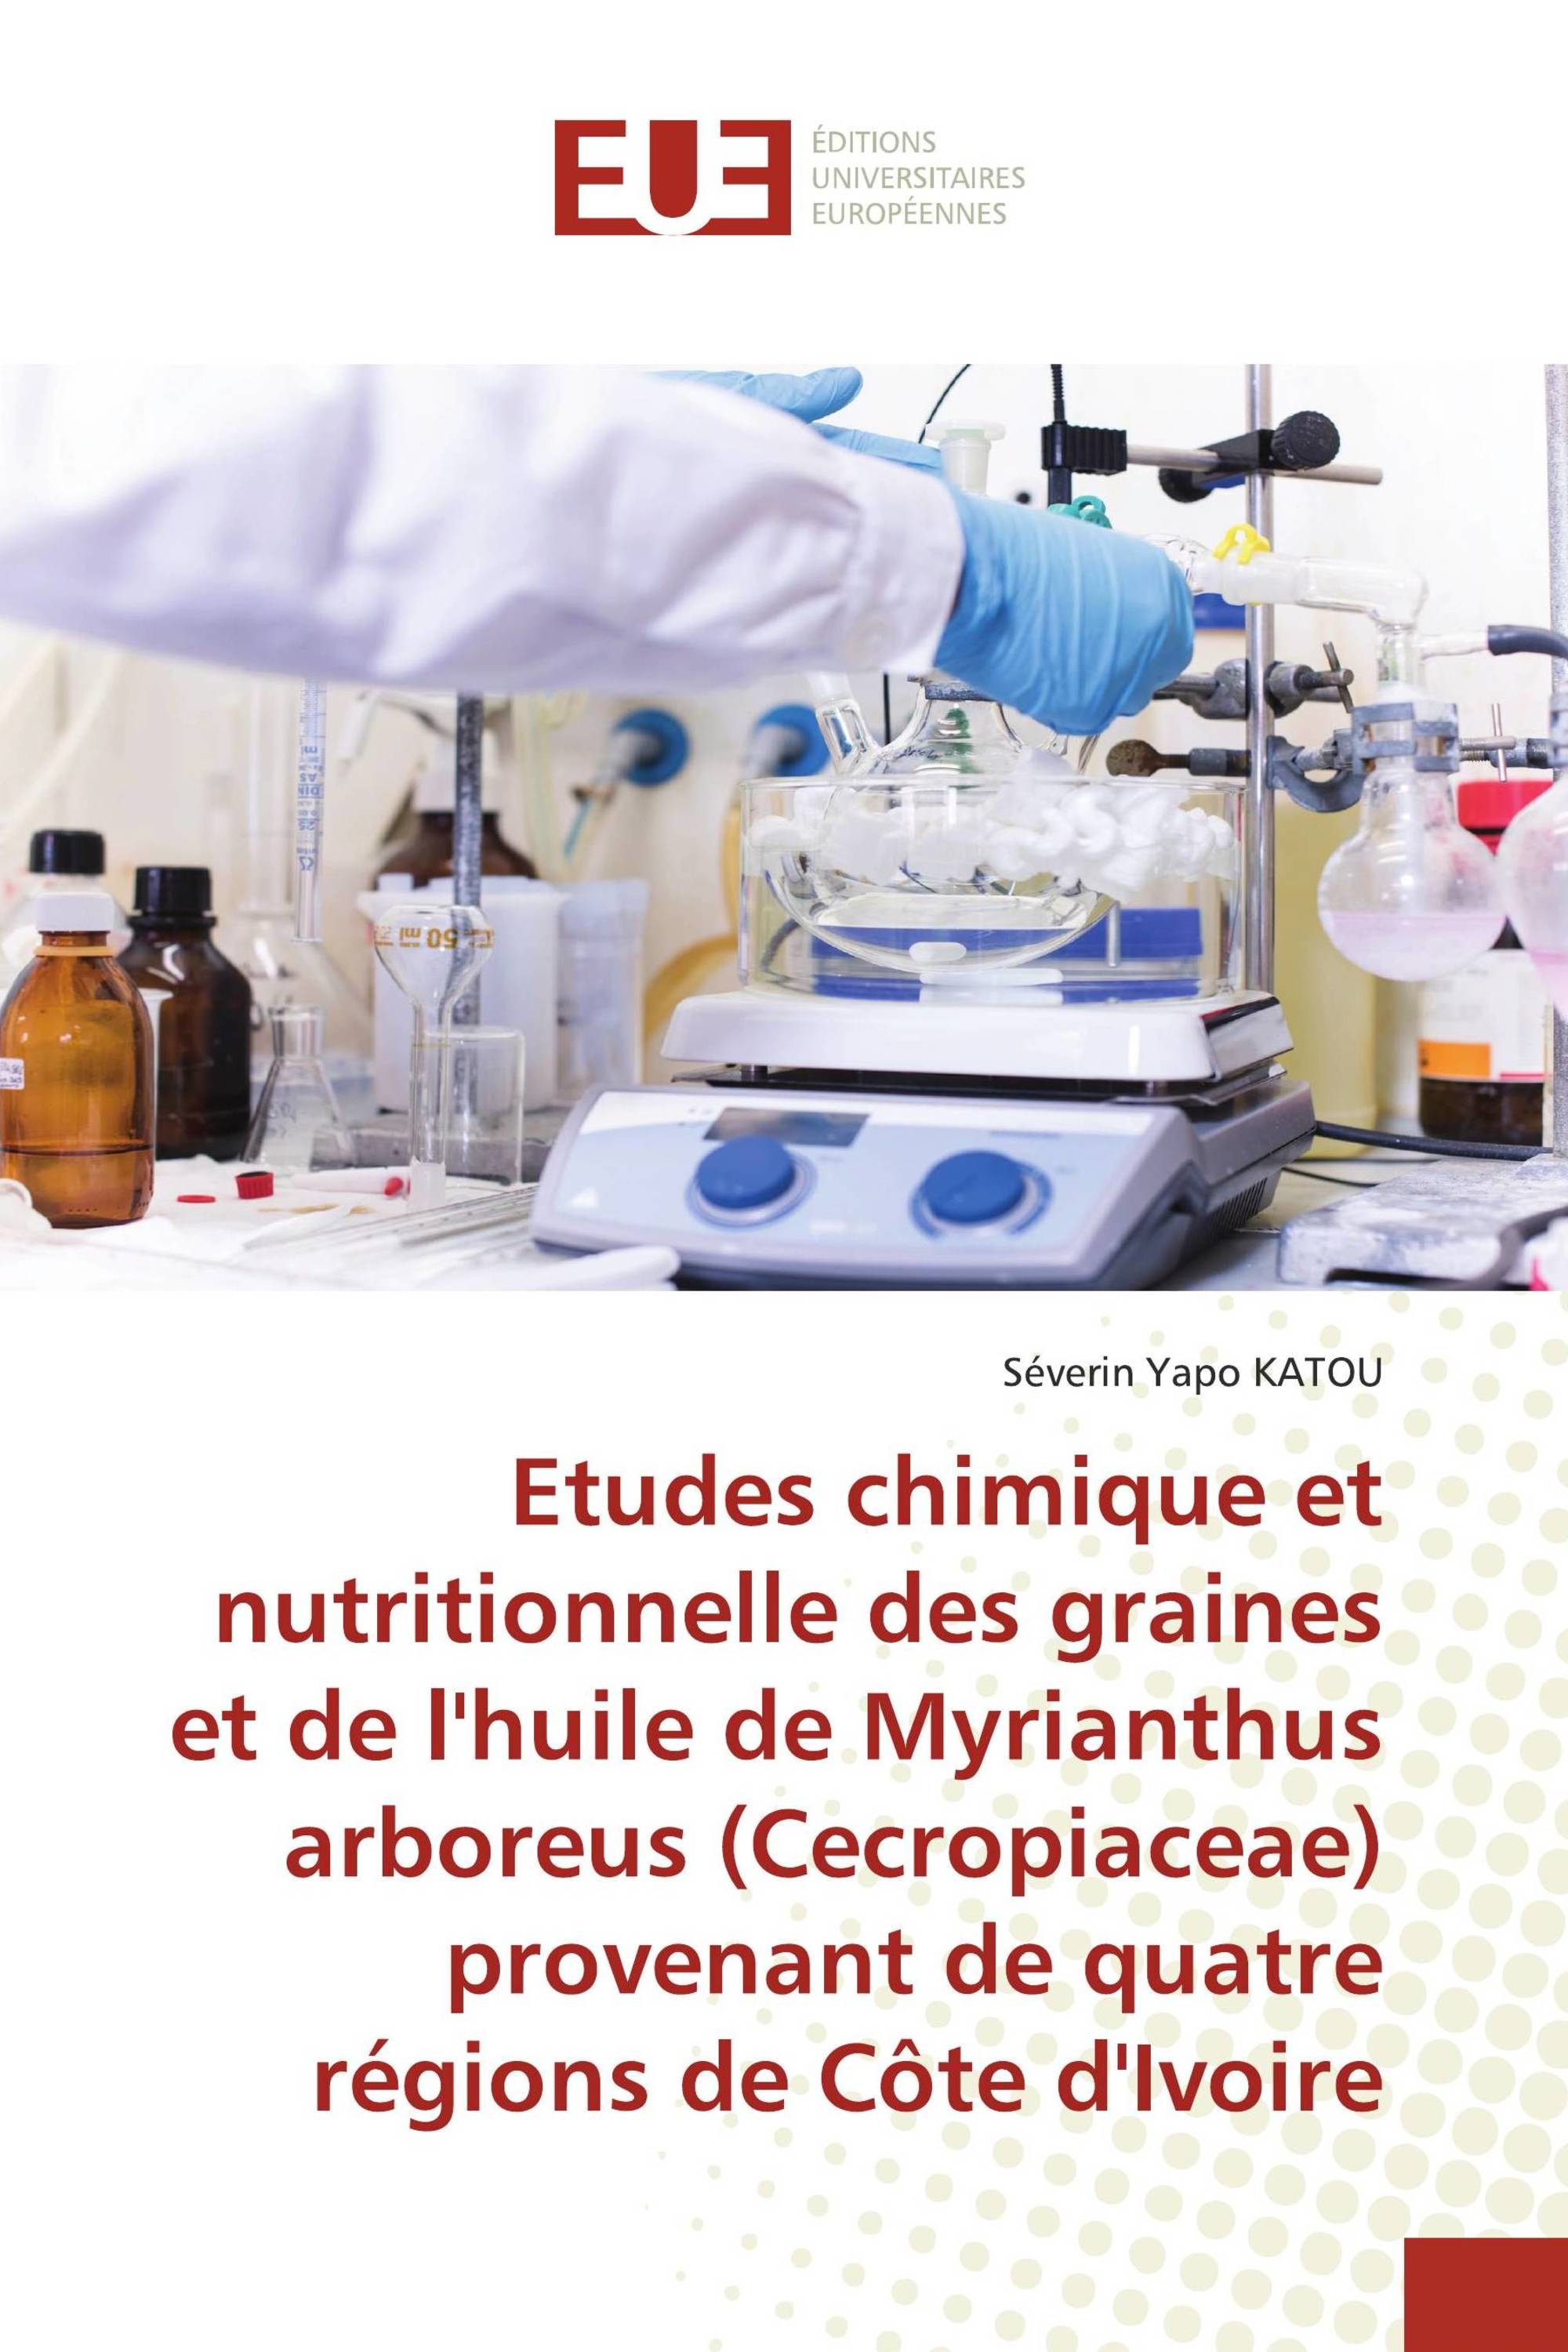 Etudes chimique et nutritionnelle des graines et de l'huile de Myrianthus arboreus (Cecropiaceae) provenant de quatre régions de Côte d'Ivoire